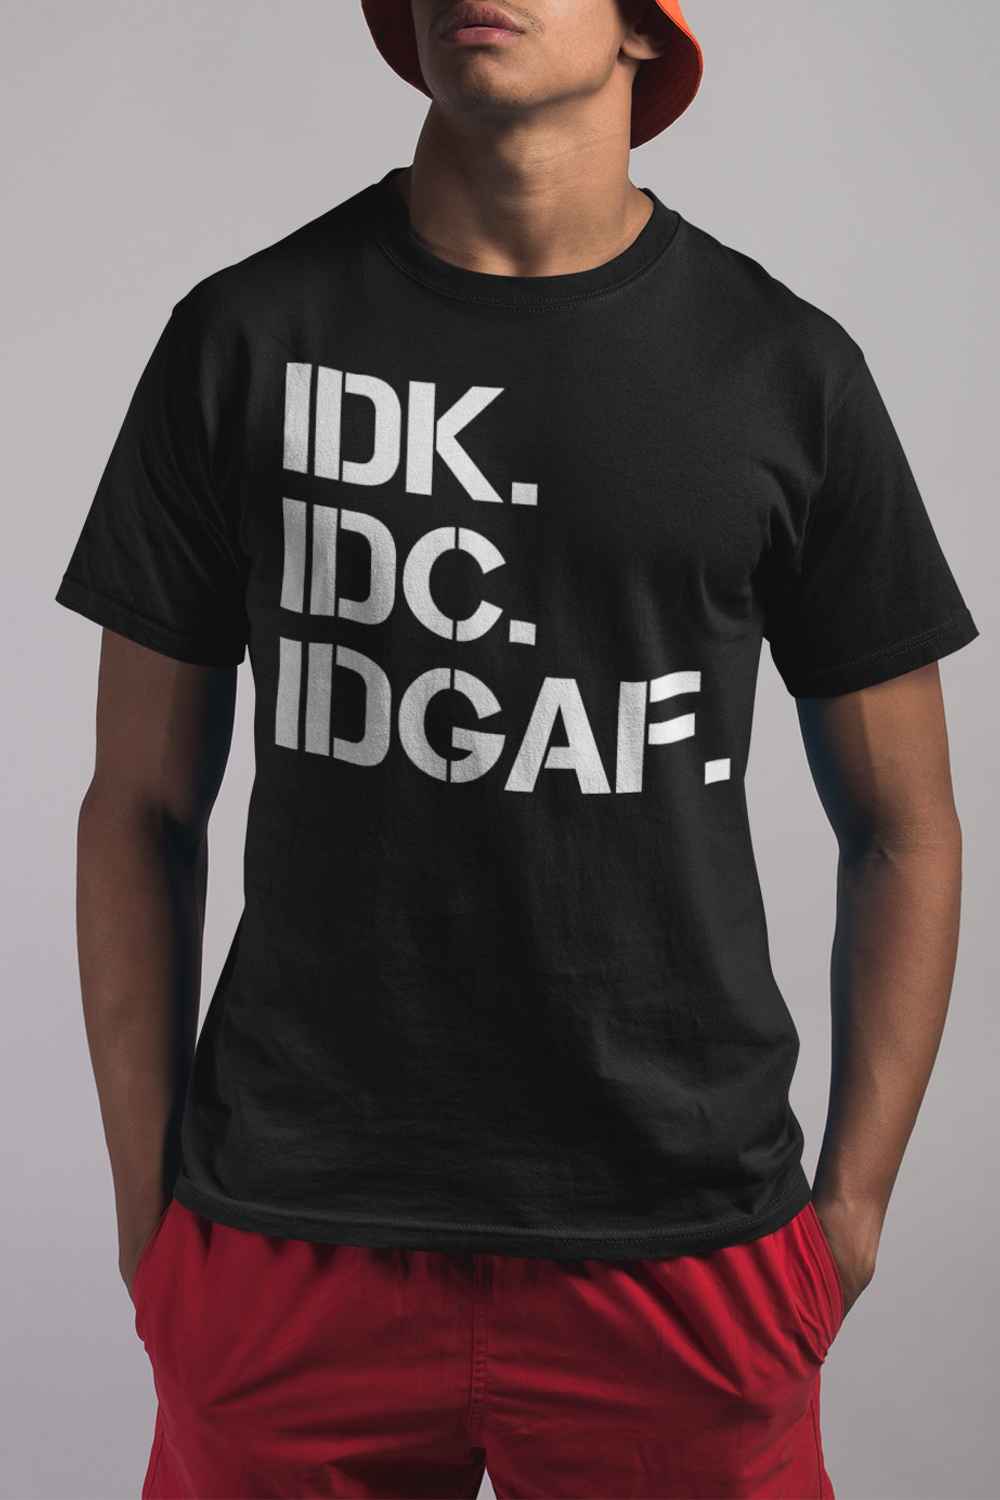 IDK IDC IDGAF Men's Classic T-Shirt